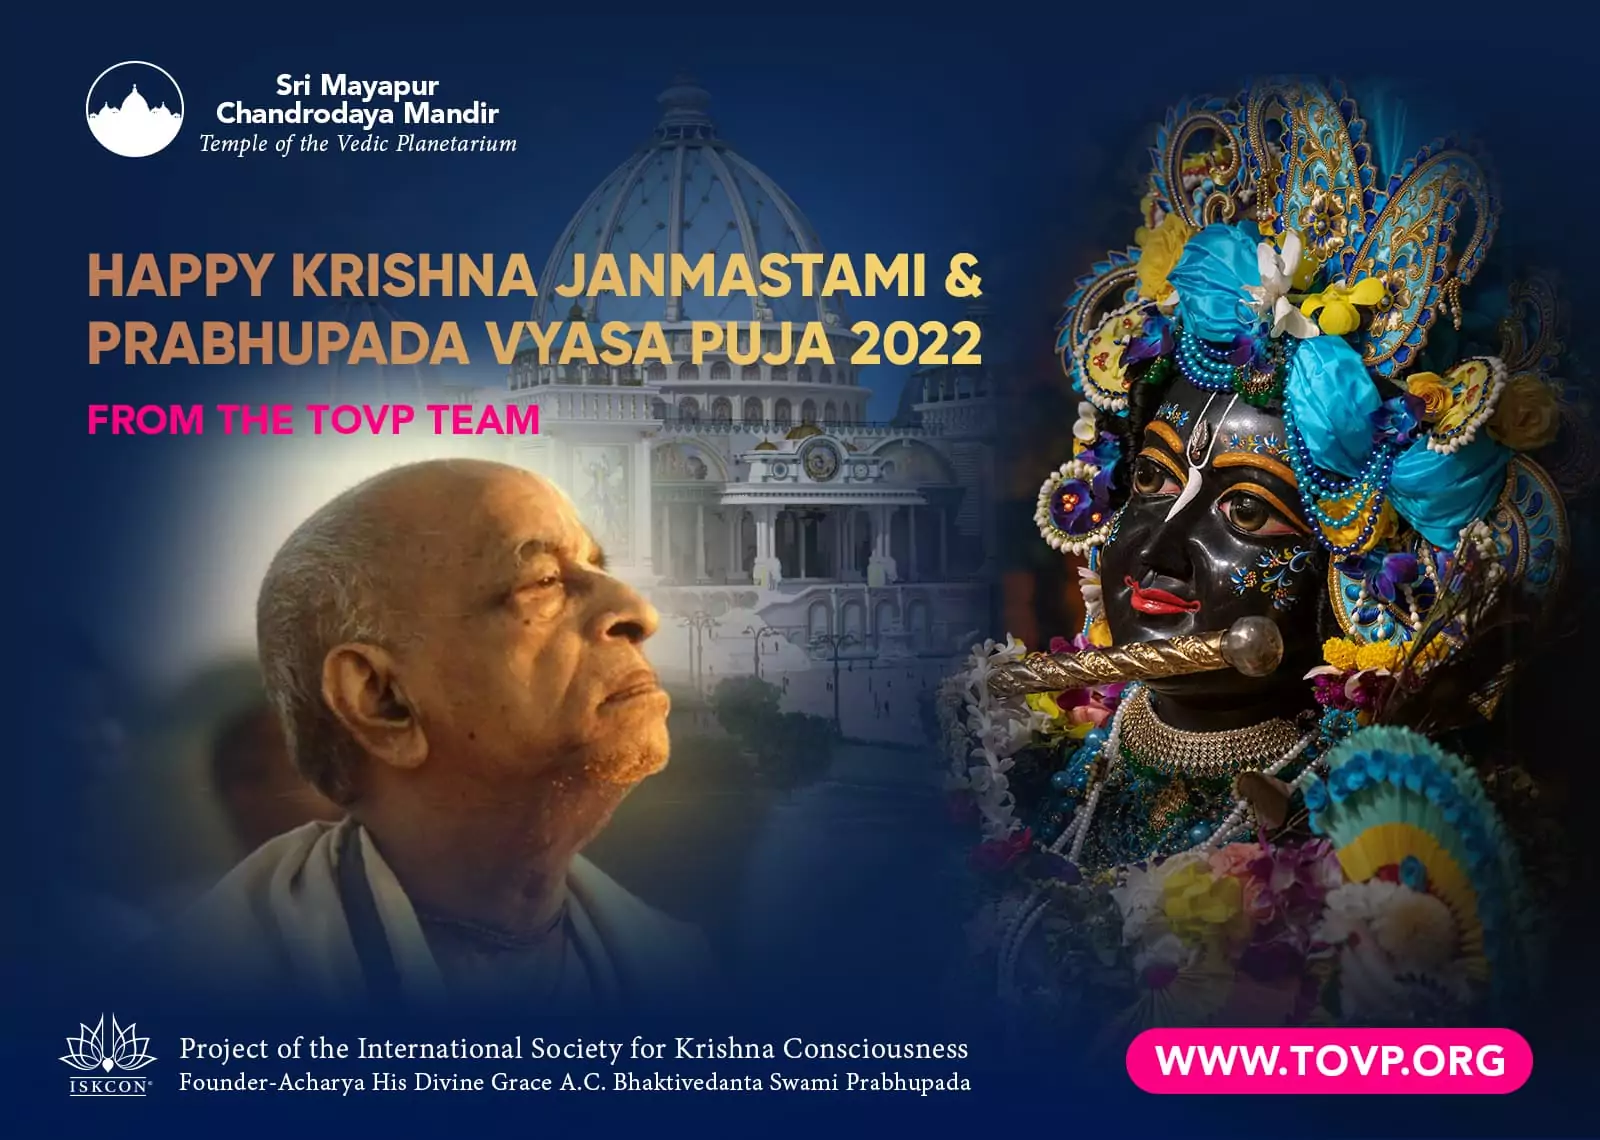 سعيد Krishna Janmastami و Prabhupada Vyasa Puja 2022 من فريق TOVP